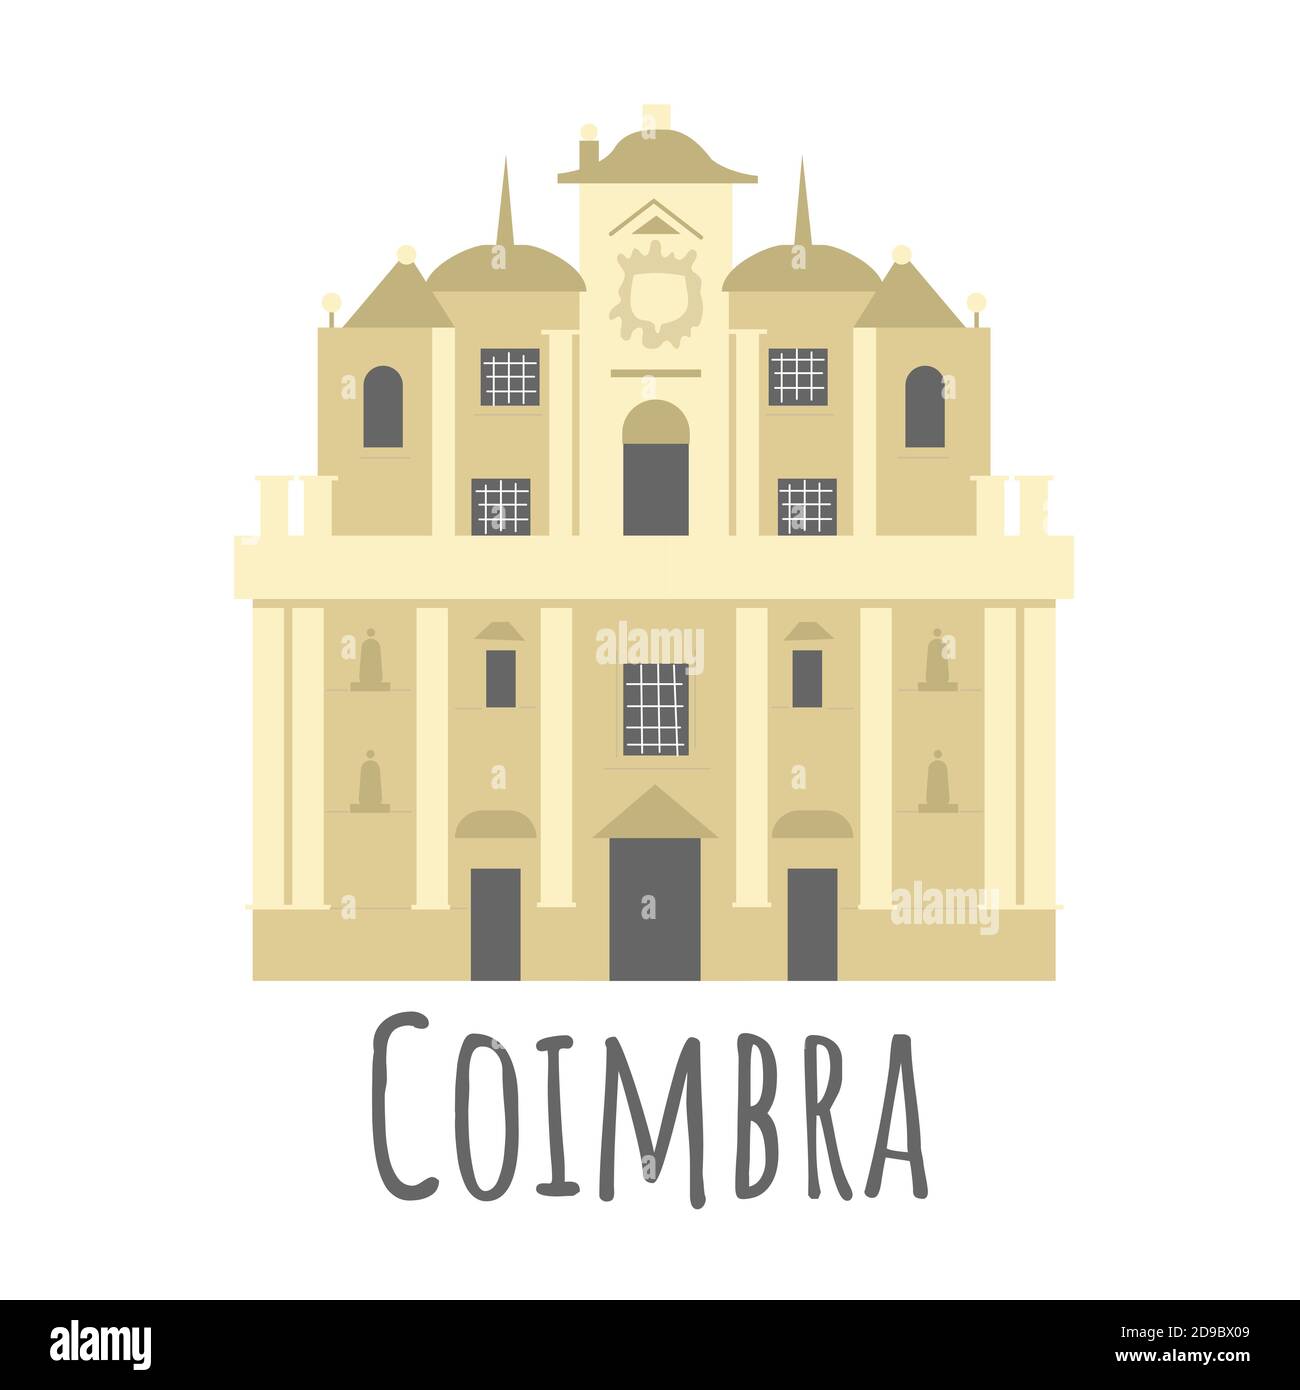 Monastero in stile piatto della Santa croce, simbolo di Coimbra. Icona del punto di riferimento per i viaggiatori. Illustrazione vettoriale isolata su sfondo bianco Illustrazione Vettoriale